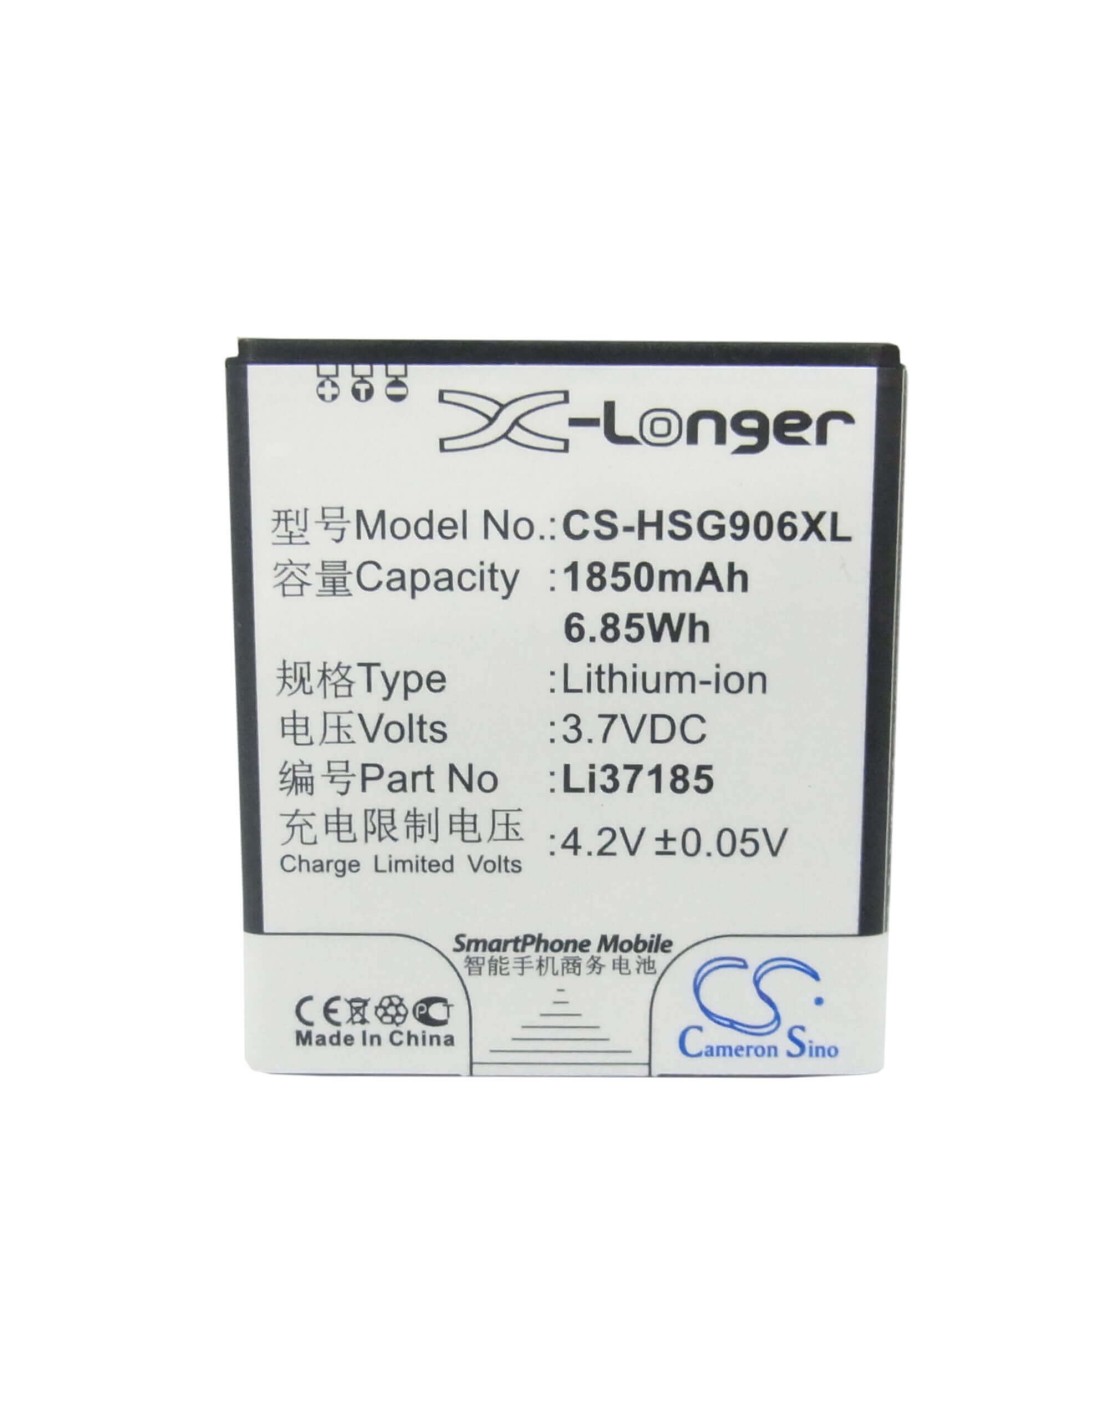 Battery for Hisense HS-EG906 3.7V, 1850mAh - 6.85Wh